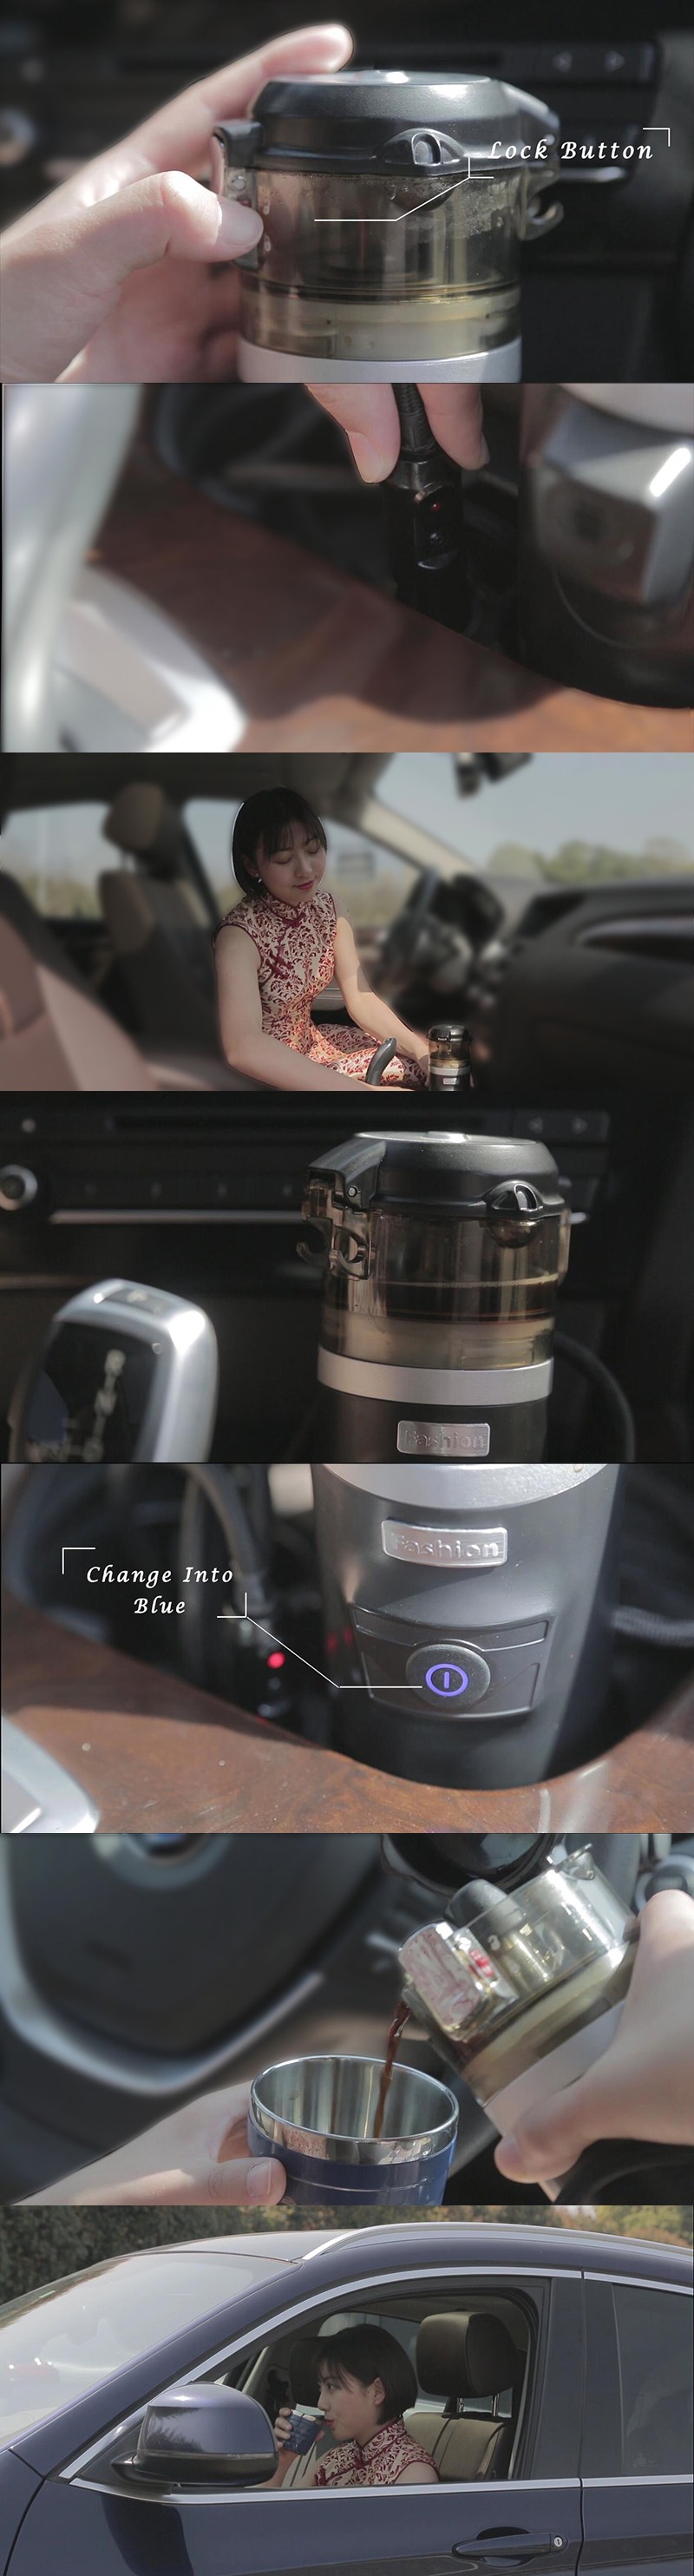 Mini Camp Portable för bilanvändning 12V Electric Espresso Coffee Maker Set för kaffekod eller malt kaffe i snabb matlagning